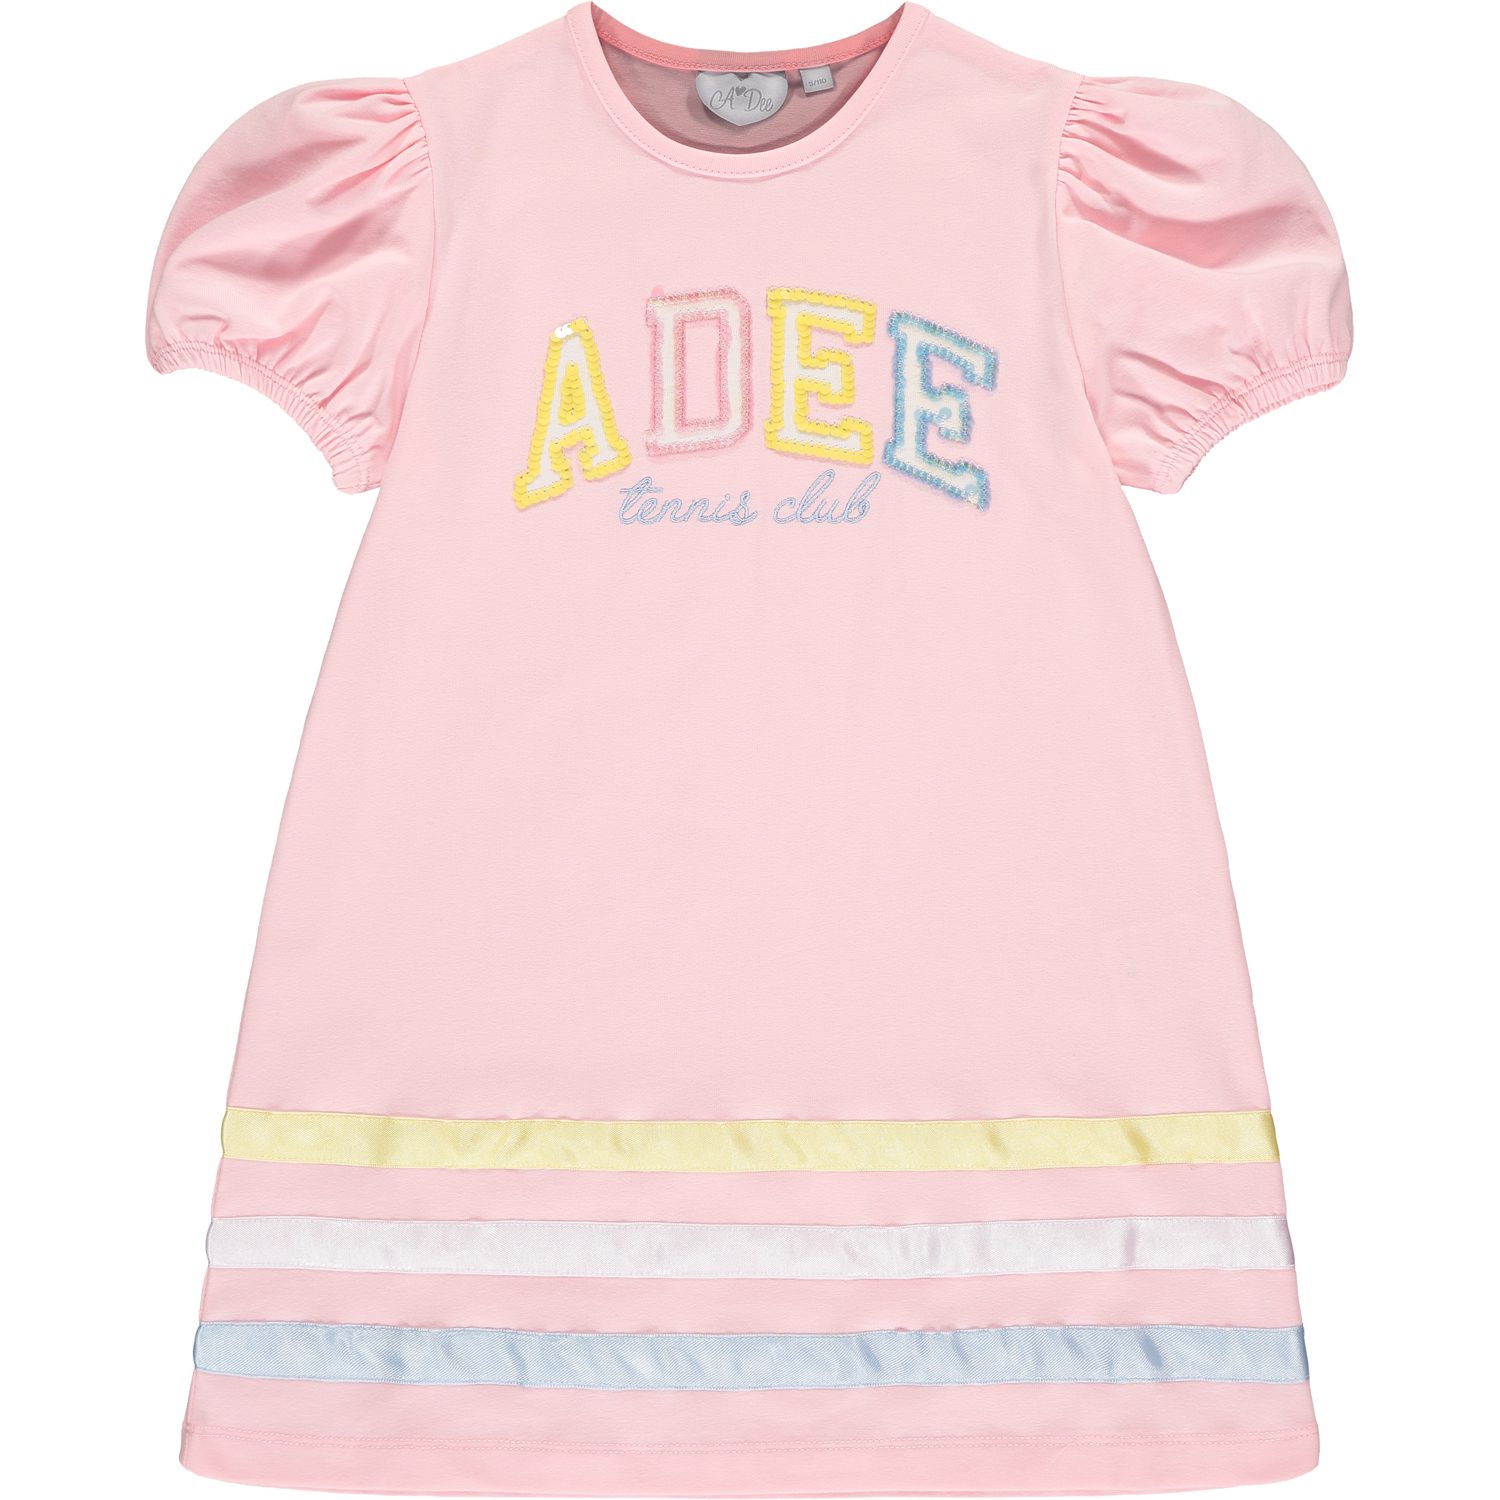 A’dee Voni roze jurk met logo voorkant